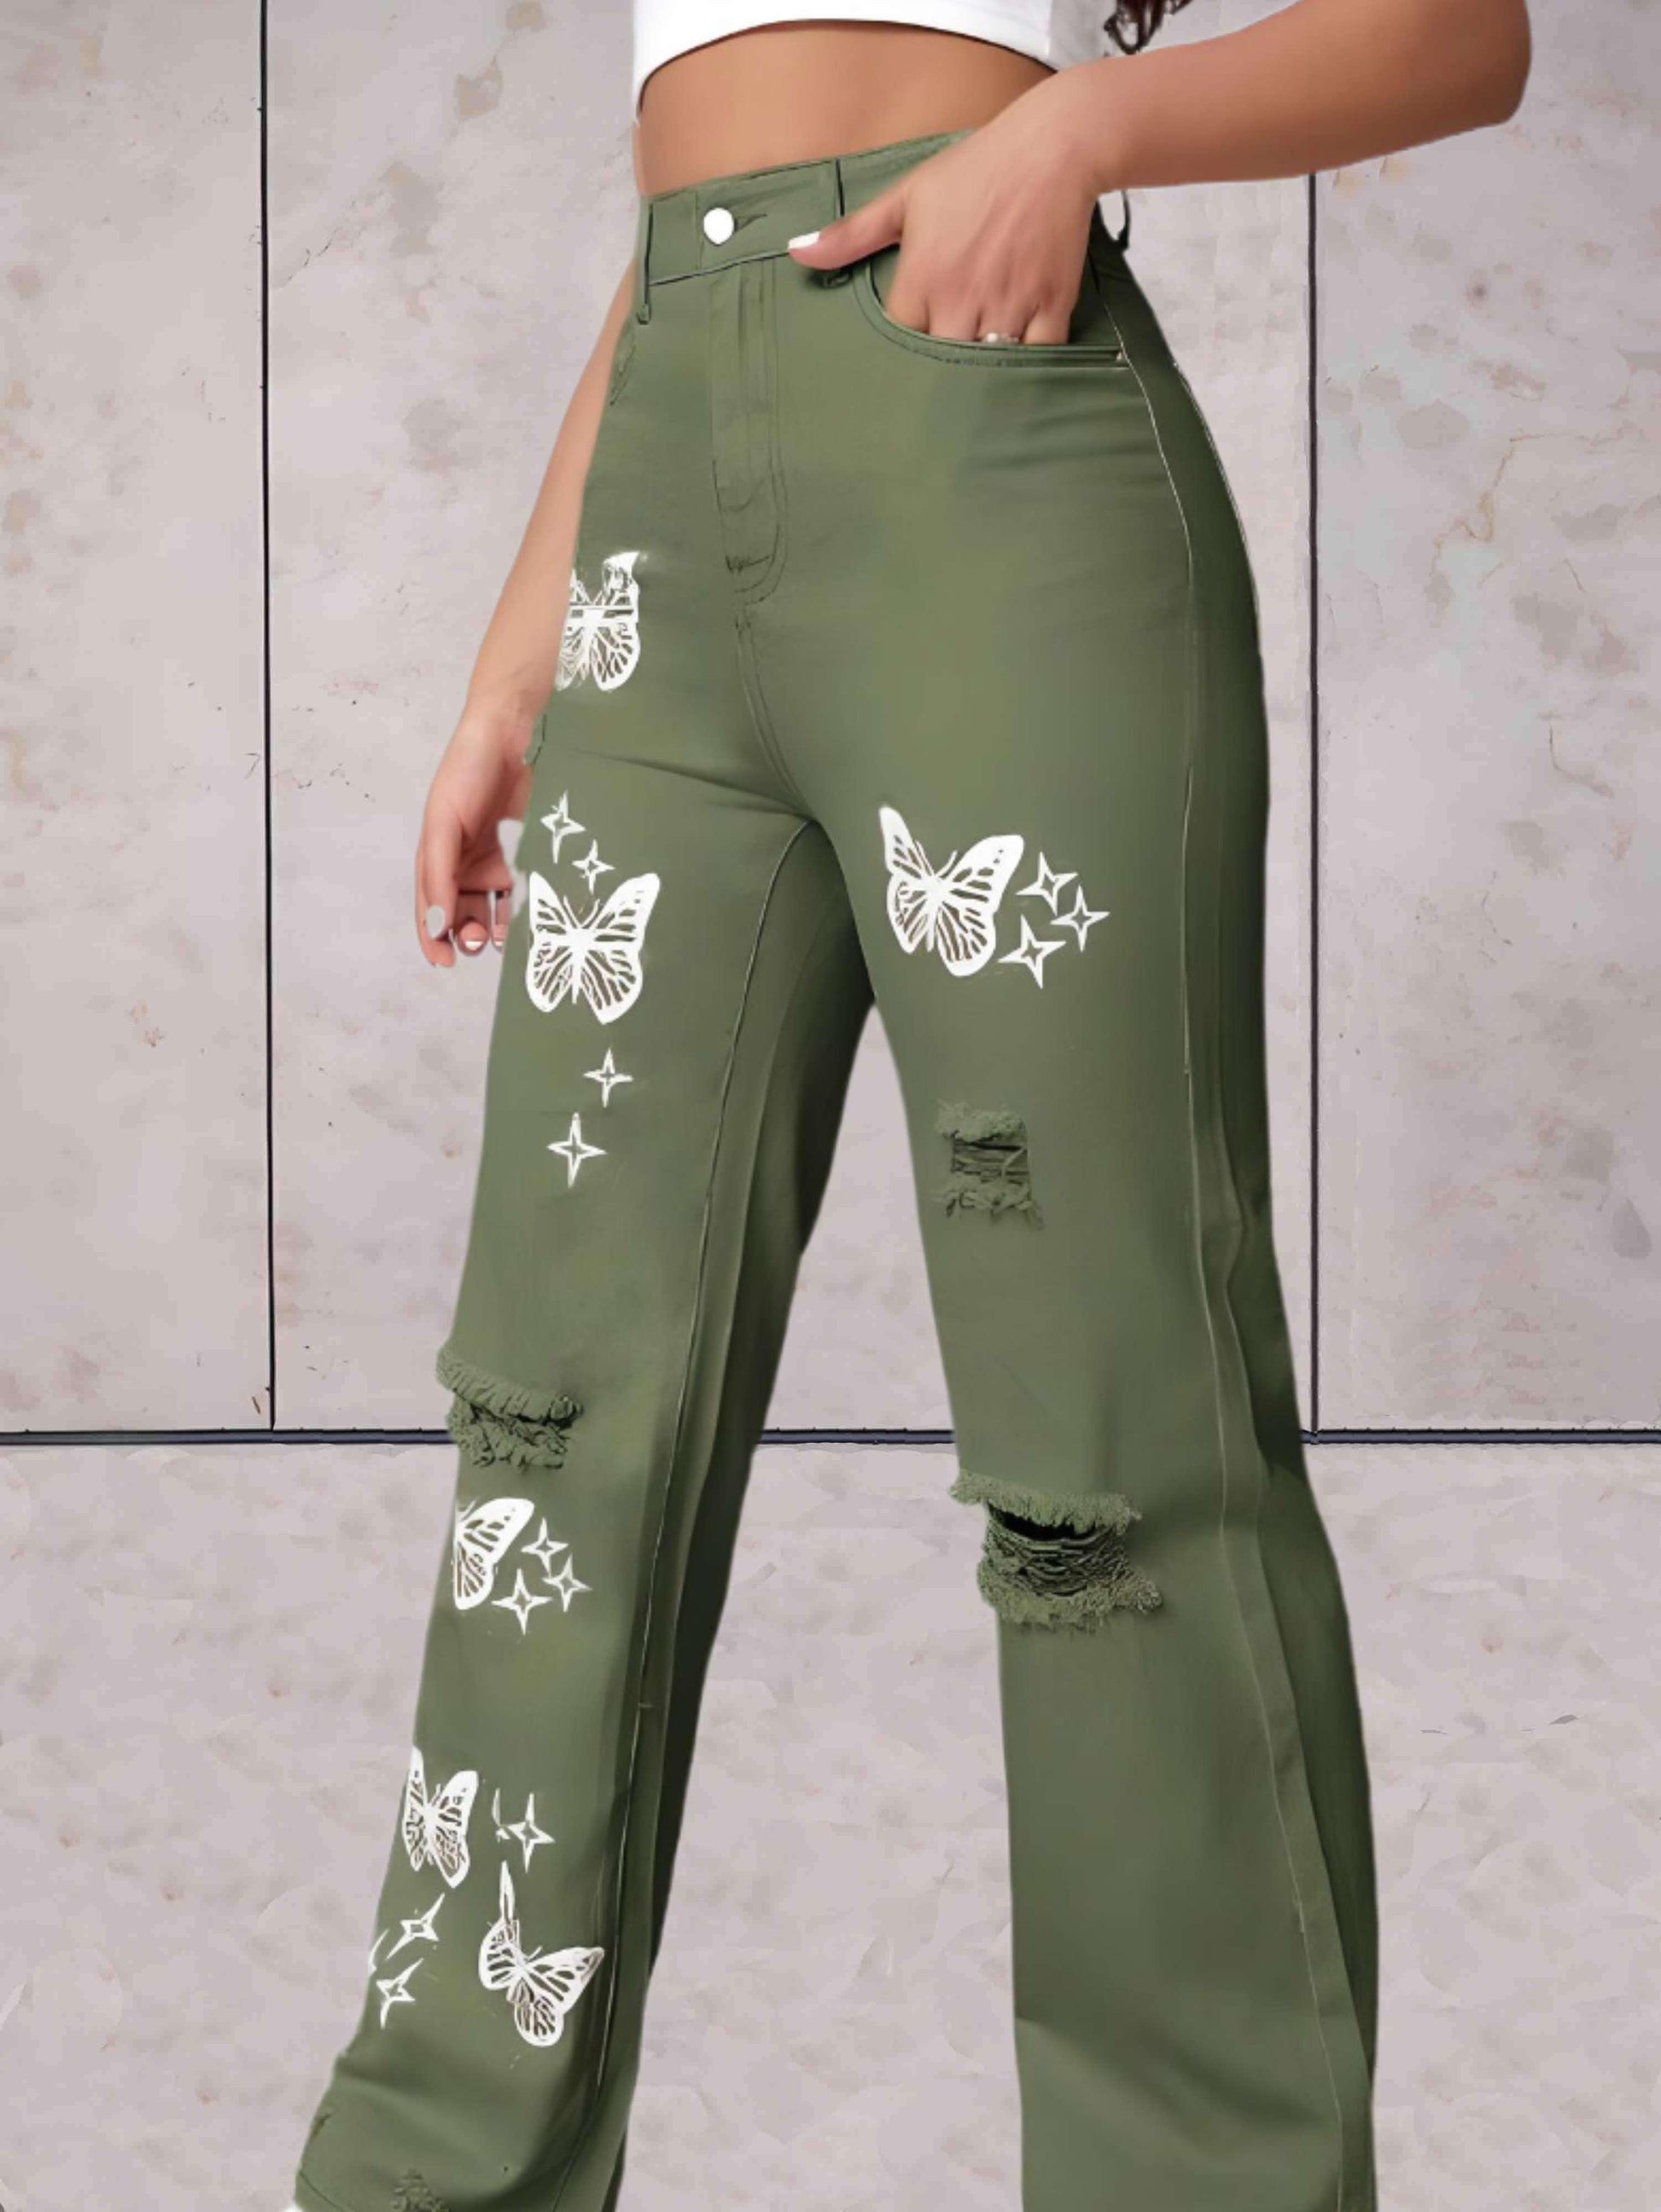 Ciara - Gescheurde jeans wijde pijpen met vlinders patroon - Sky-Sense